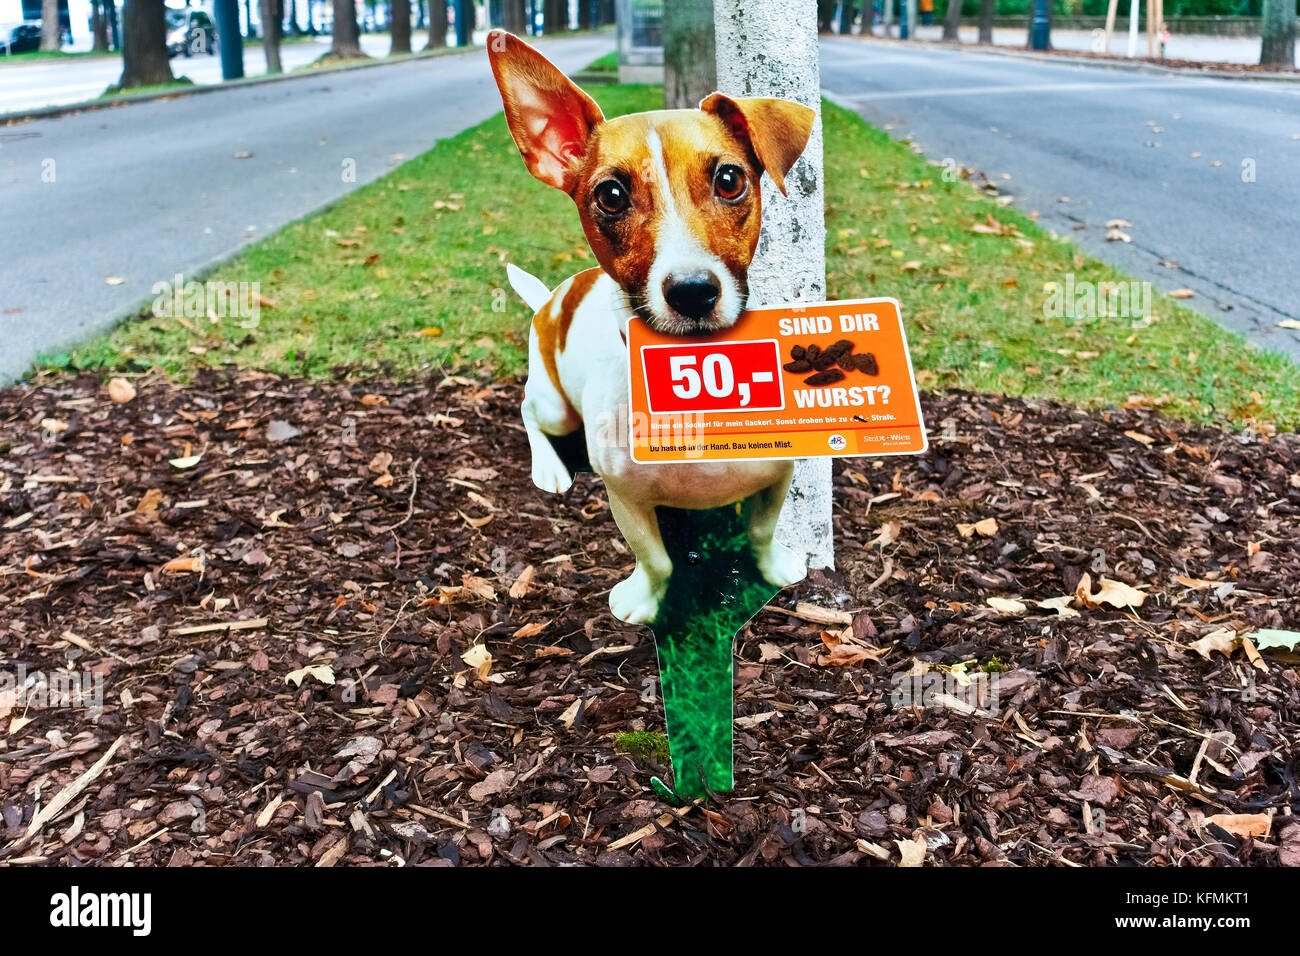 Schild Warnung Hundebesitzer der 50 Euro Geldstrafe für nicht entfernen Hundeabfall. Stadtpark. Wien, Österreich, Europa, Europäische Union, EU. Stockfoto